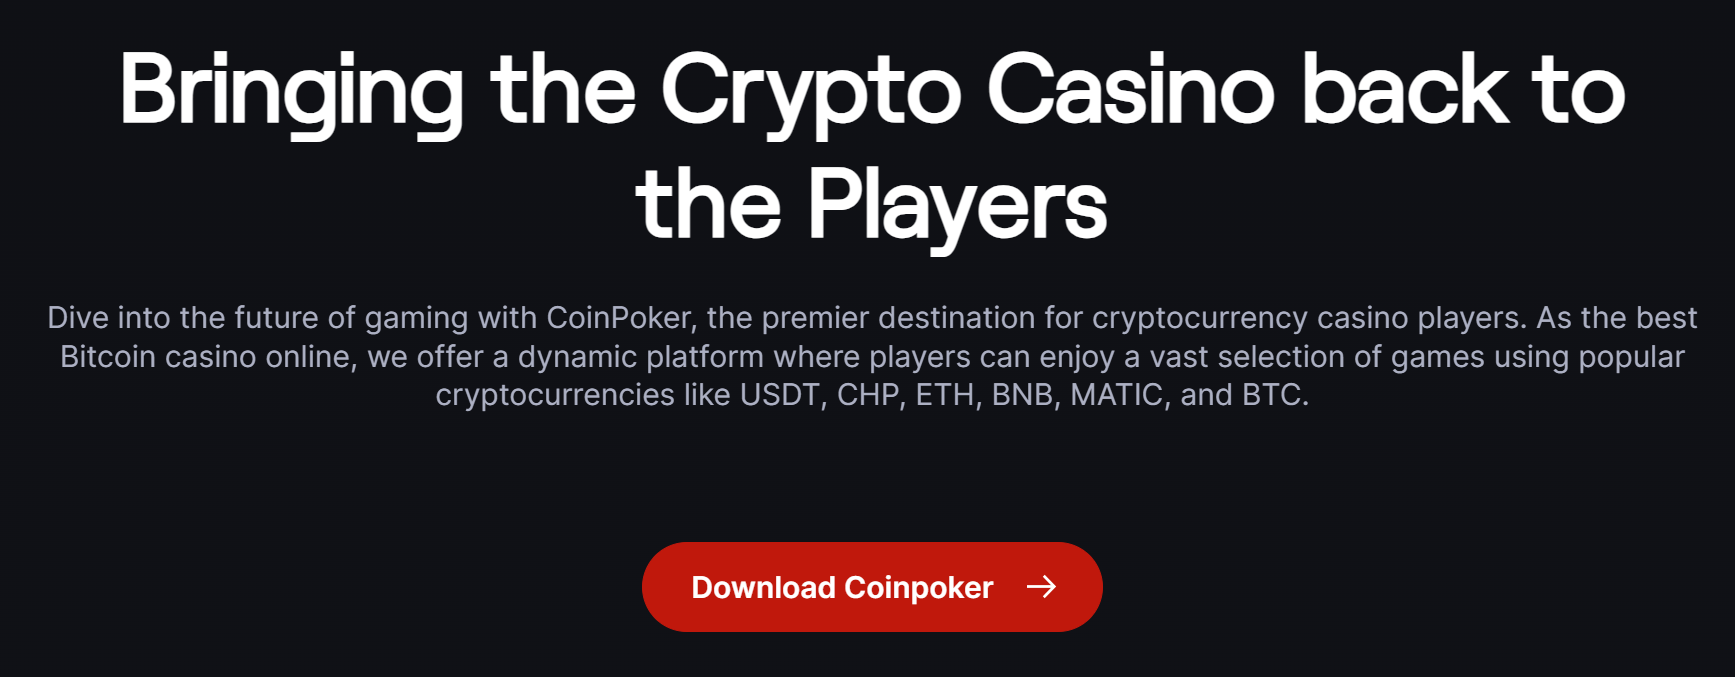 coinpoker crypto casino price prediction